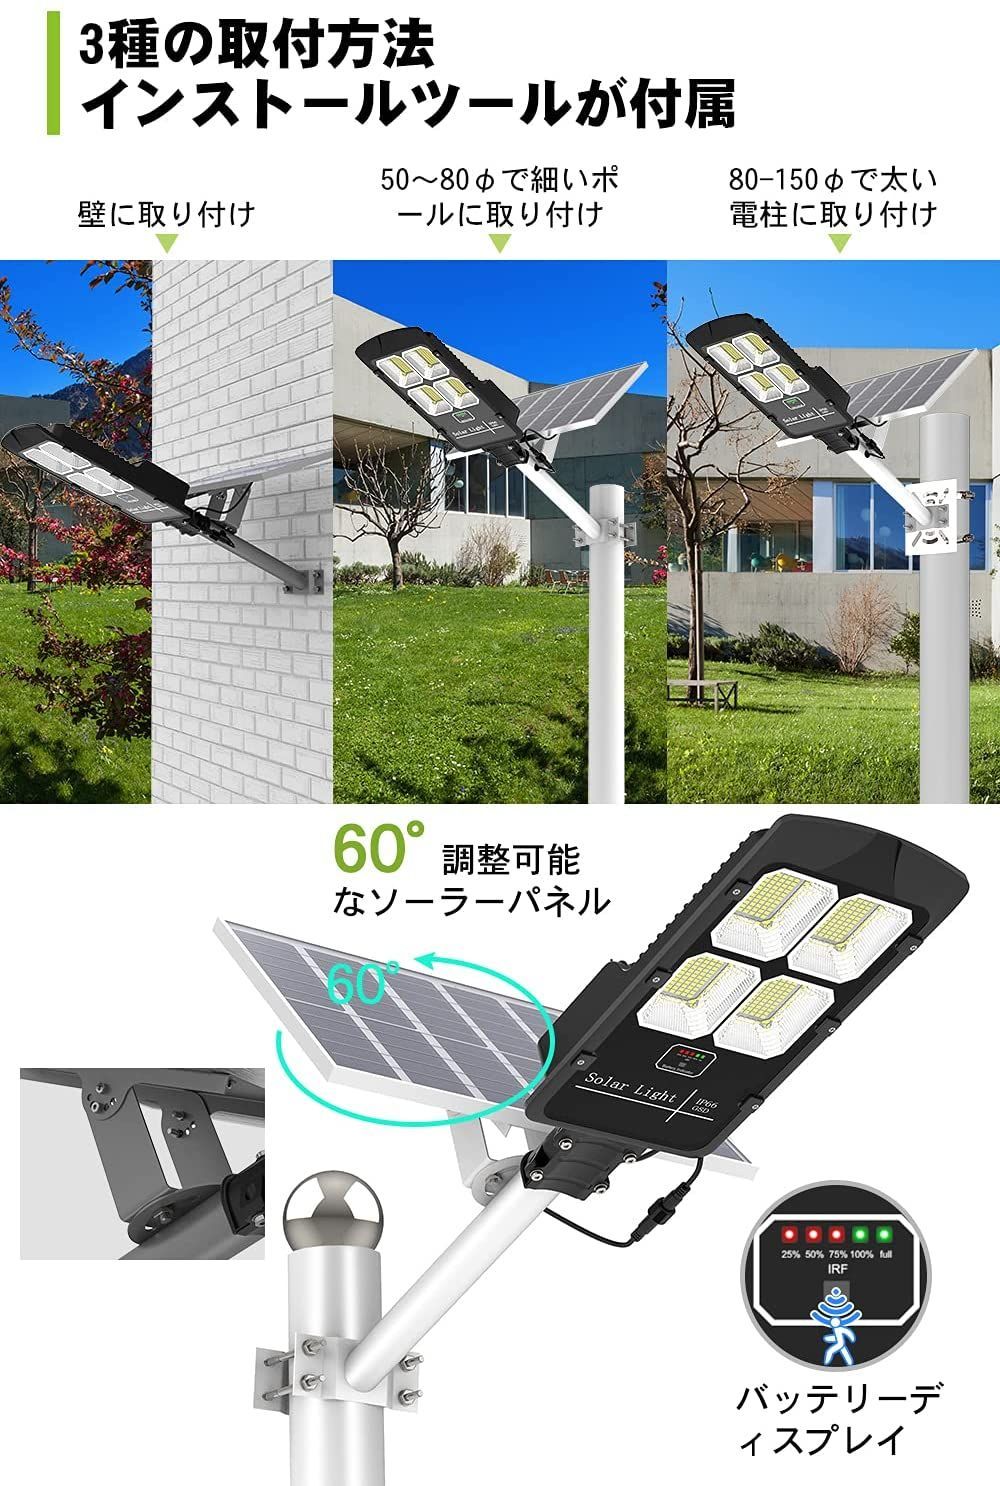 日本向け正規品 LED 街灯 50w センサー ソーラー充電 防水 取付簡単